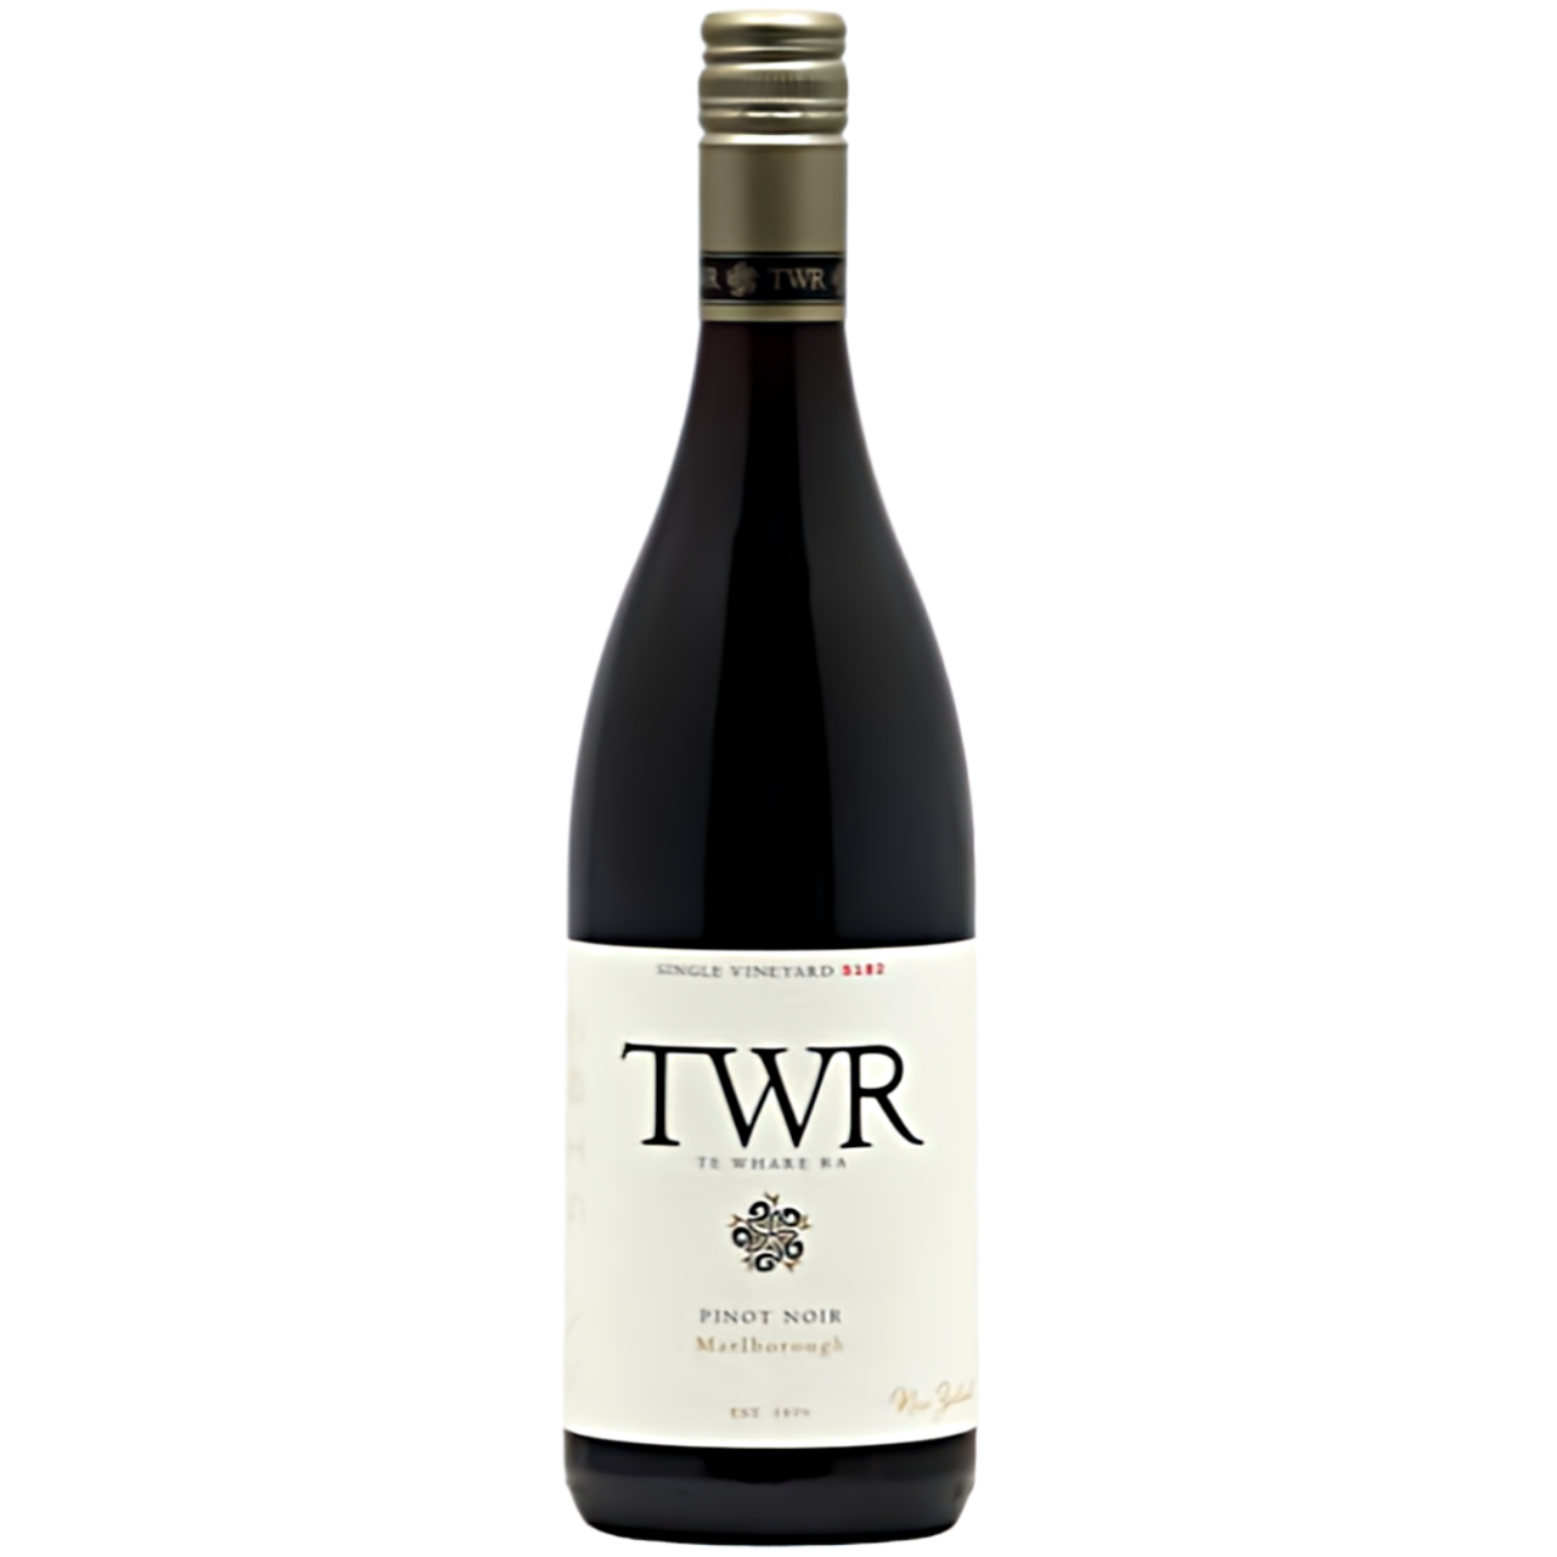 2017 Te Whare Ra - SV 5182 Pinot Noir